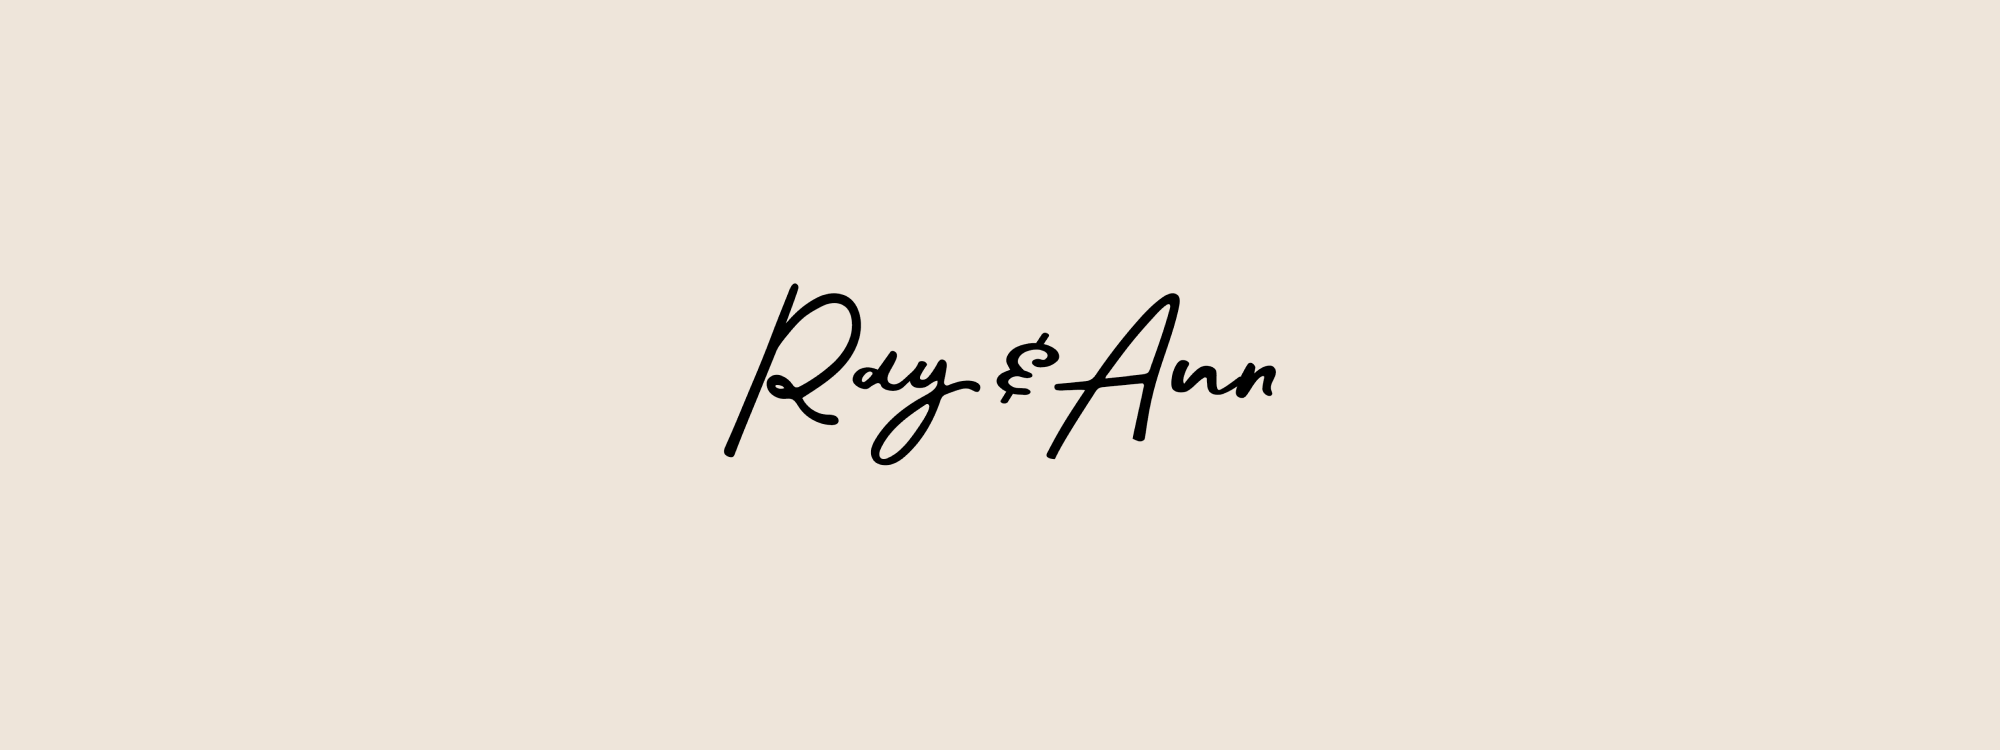 Ray & Ann